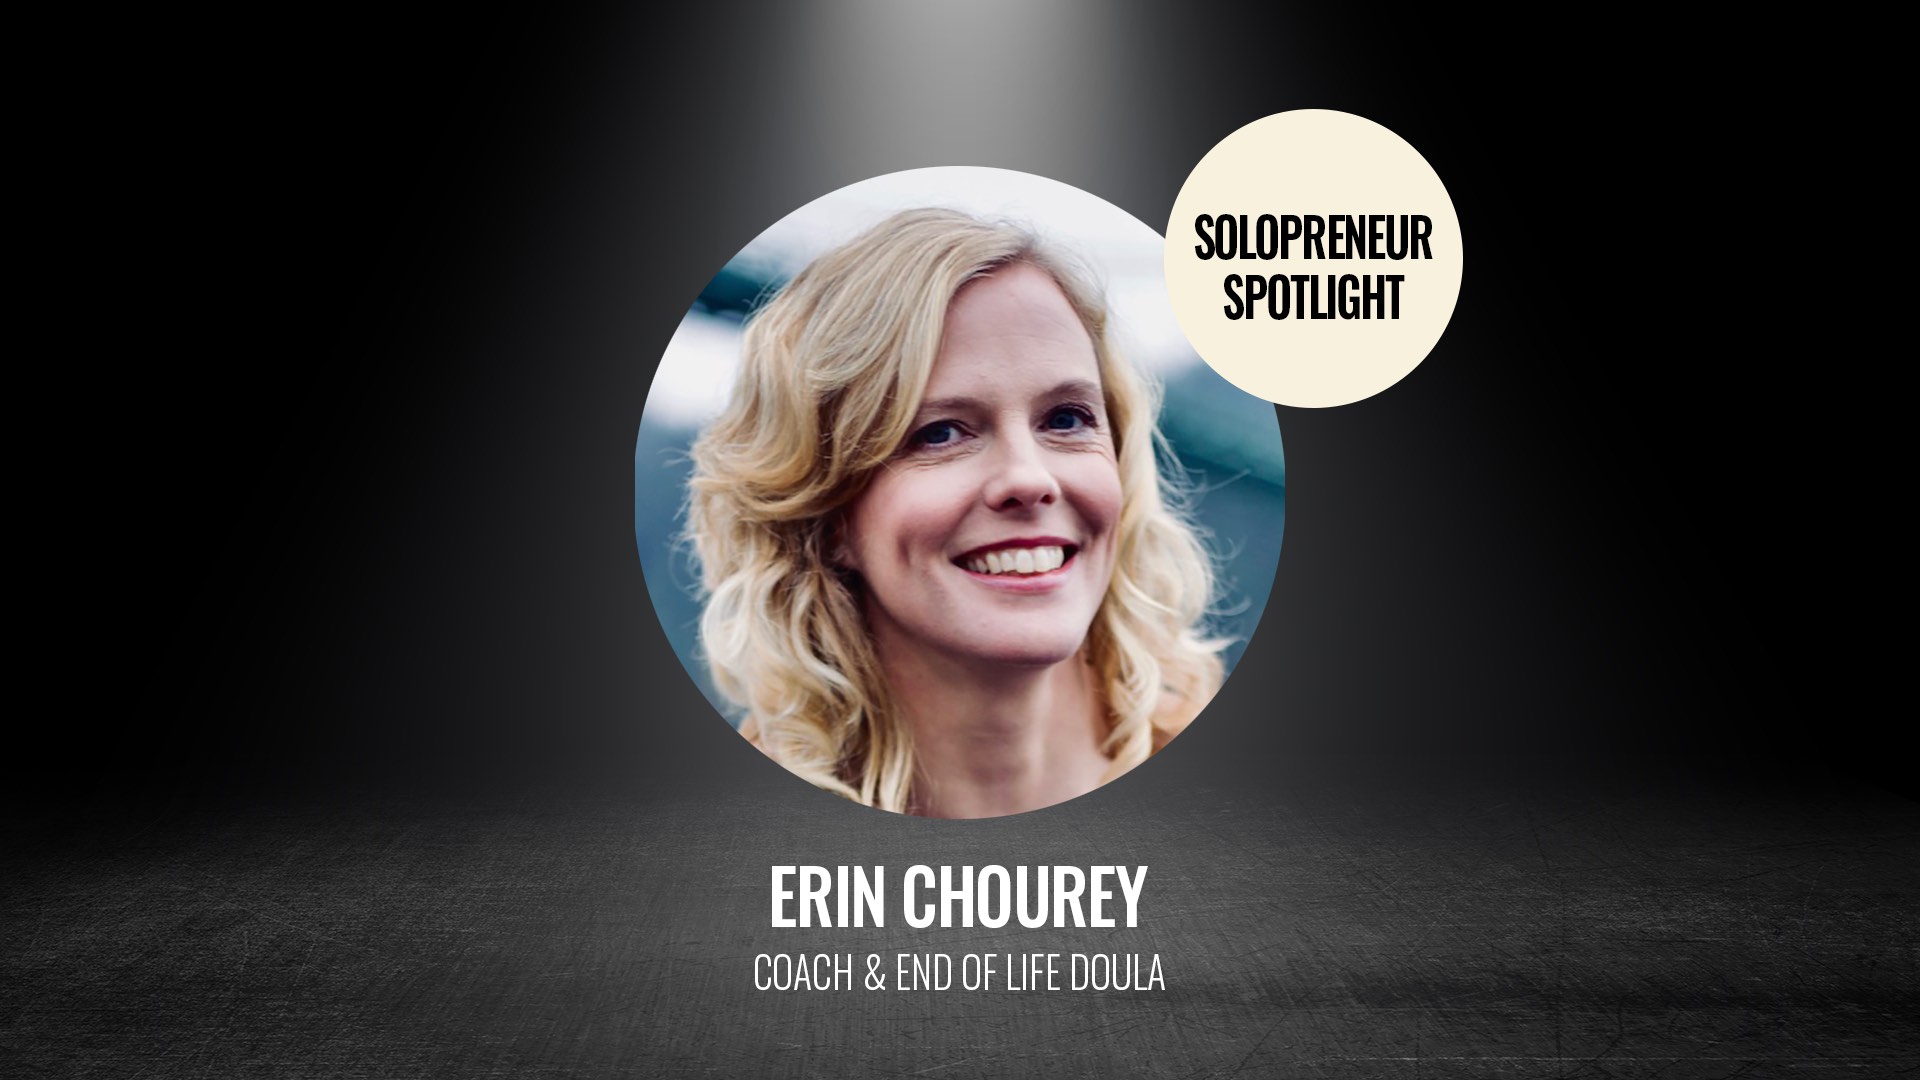 Brand Genie client Erin Chourey Soloprenuer Spotlight